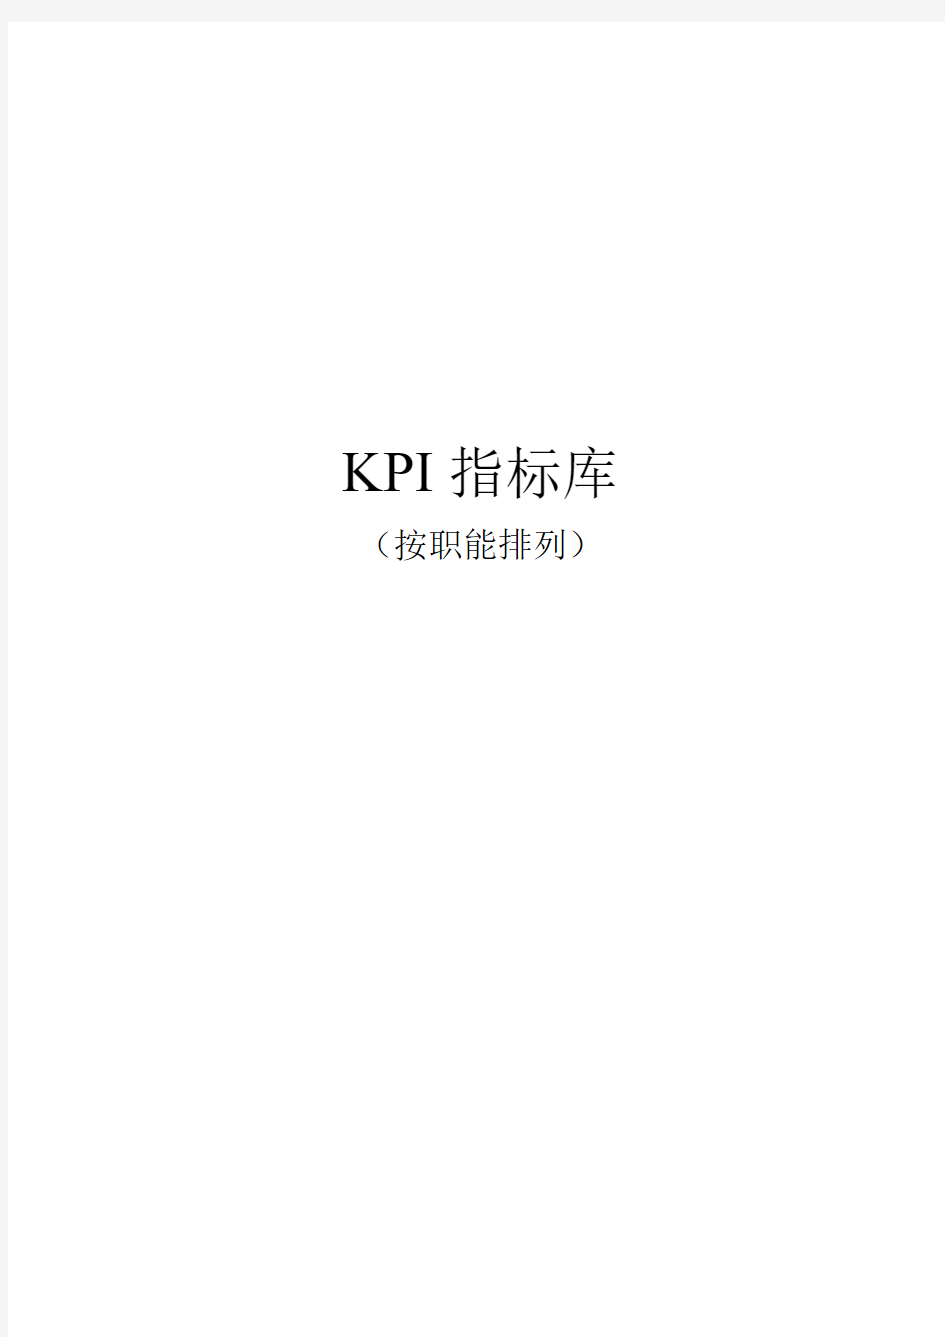 【绩效】《最全绩效考核KPI指标库》按职能(155页)